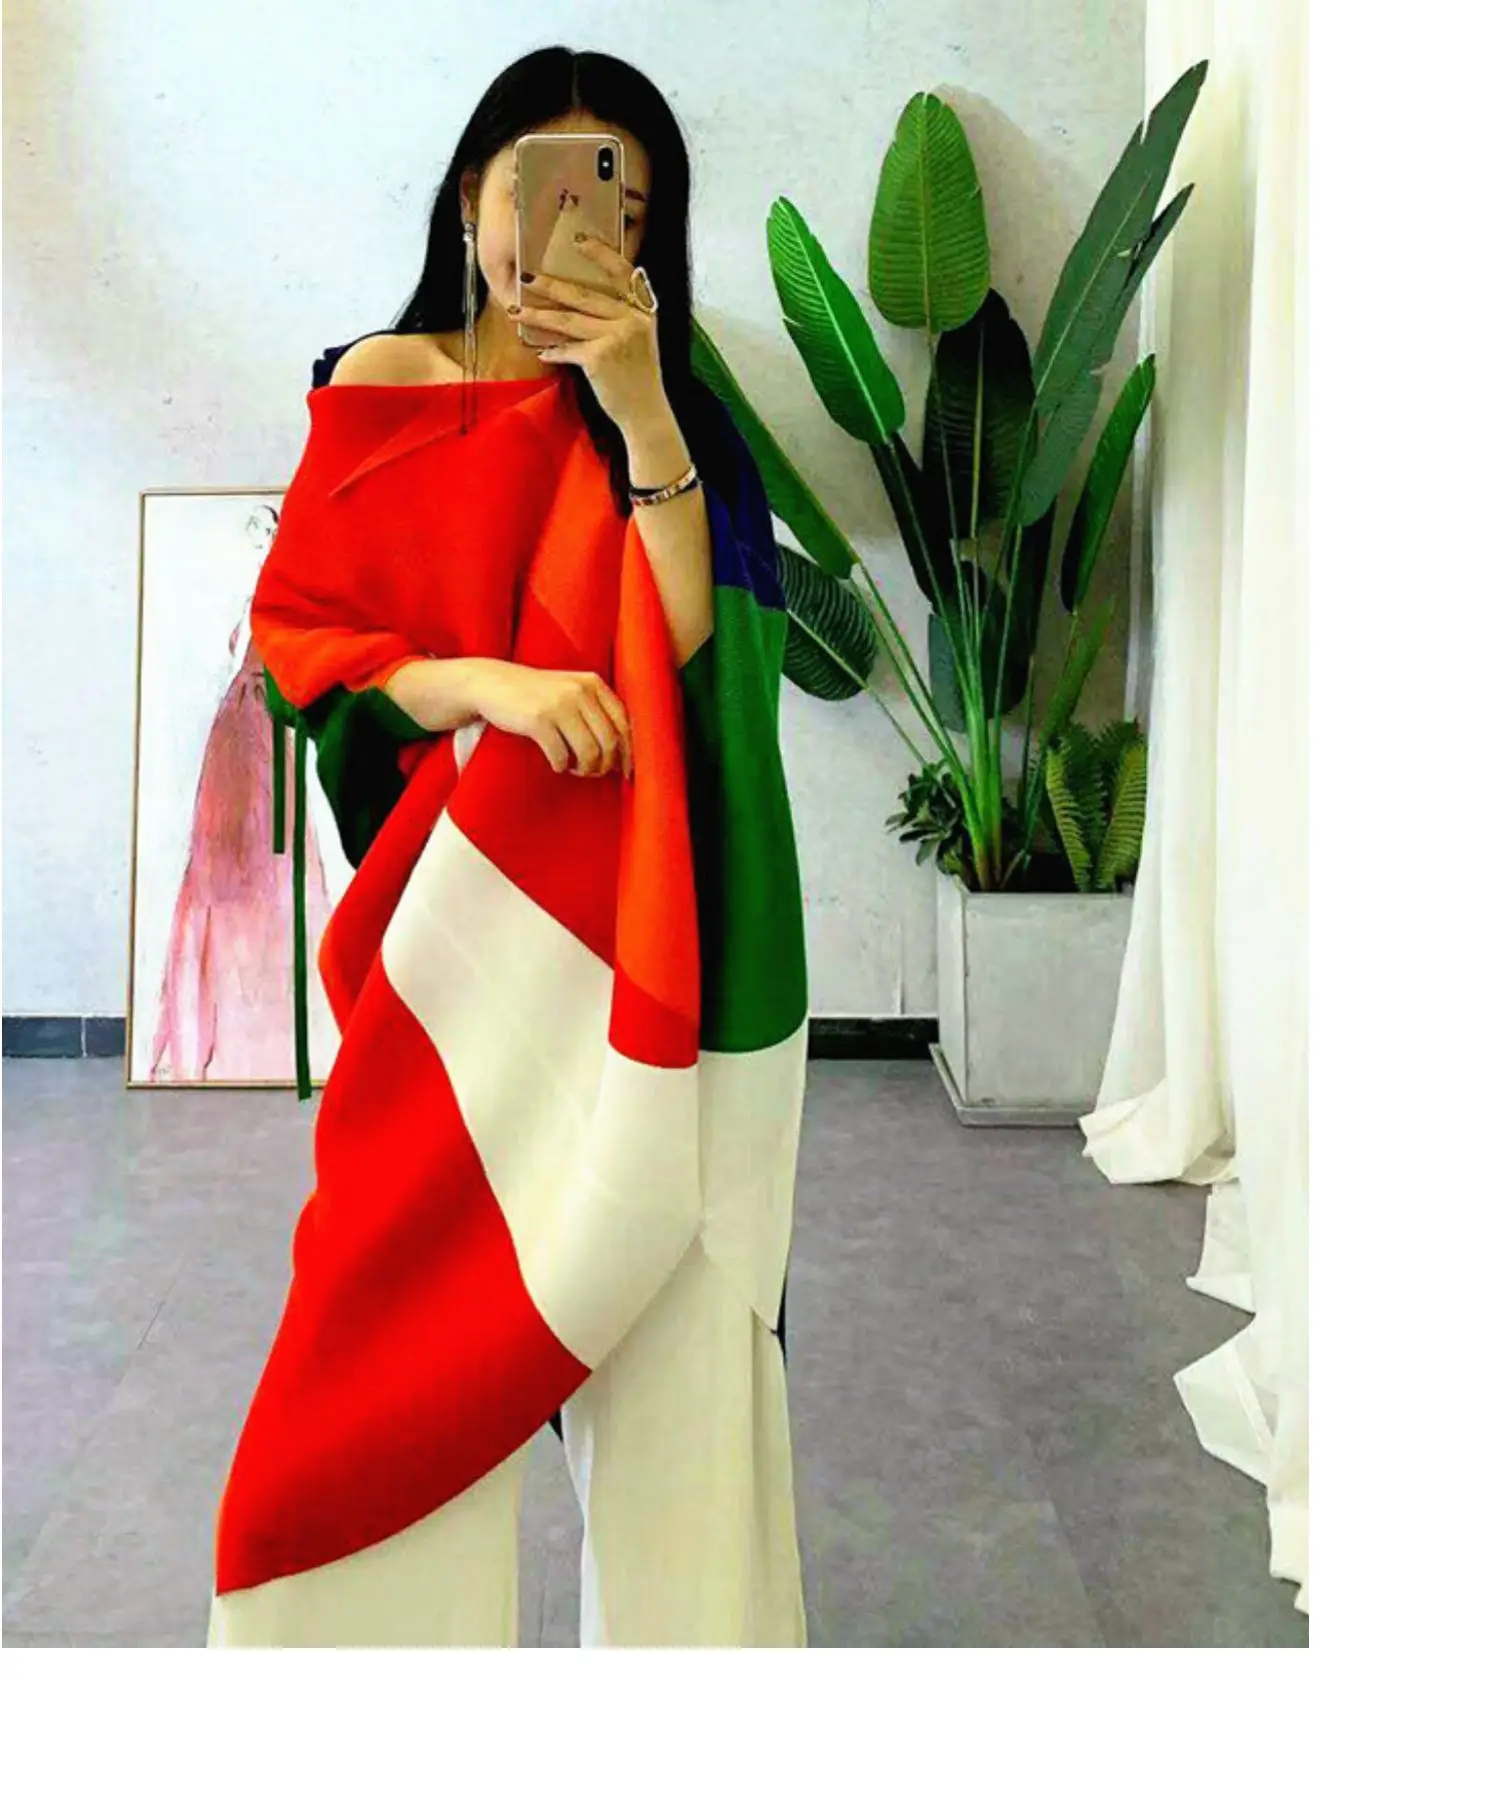 Changpleat Весна Лето дизайн женское асимметричное платье Miyak Плиссированное модное платье с рукавом летучая мышь спереди и сзади